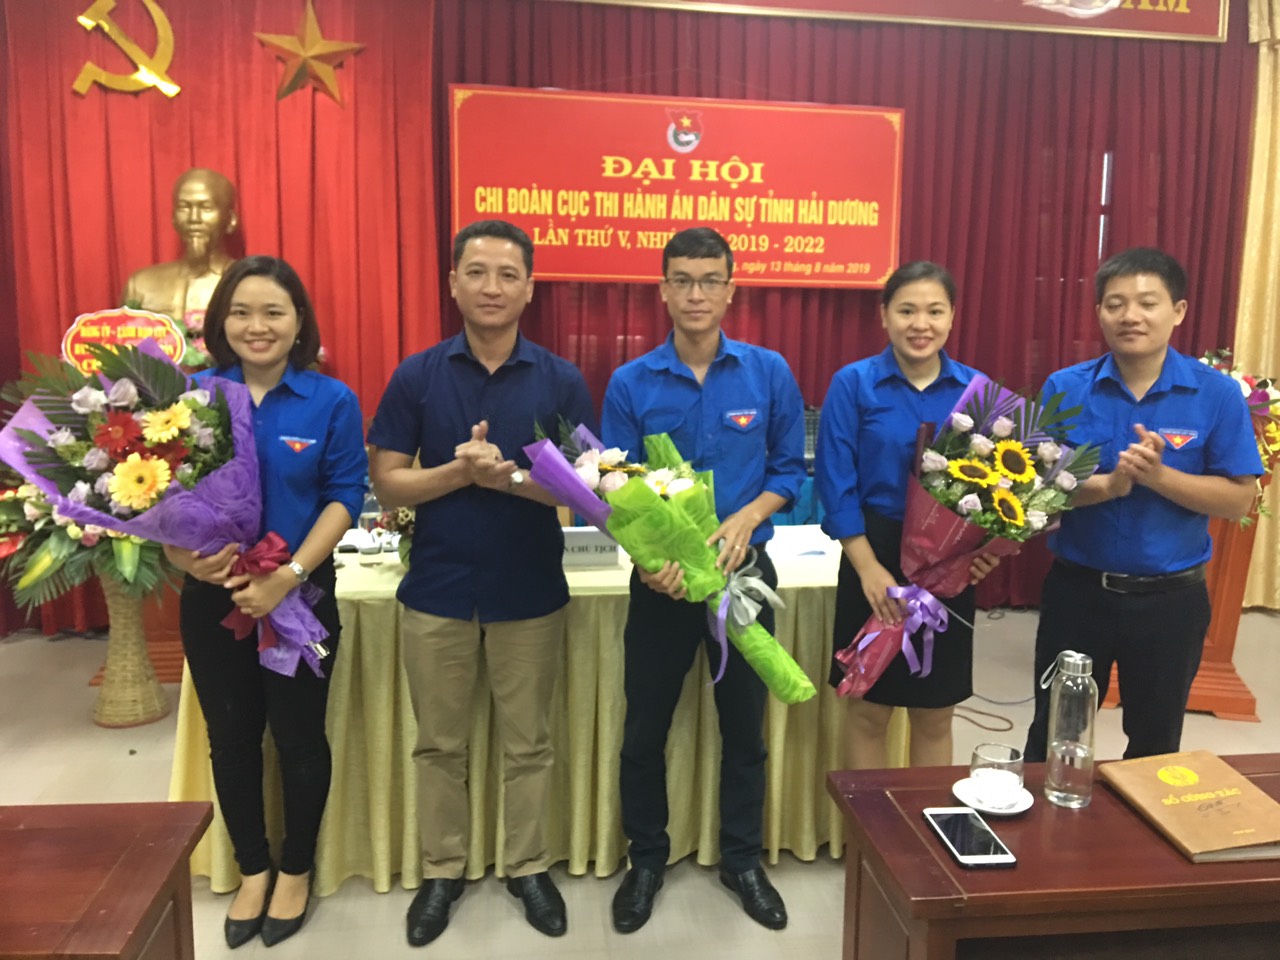 Chi đoàn Cục THADS tỉnh Hải Dương tổ chức Đại hội  lần thứ V, nhiệm kỳ 2019 - 2022